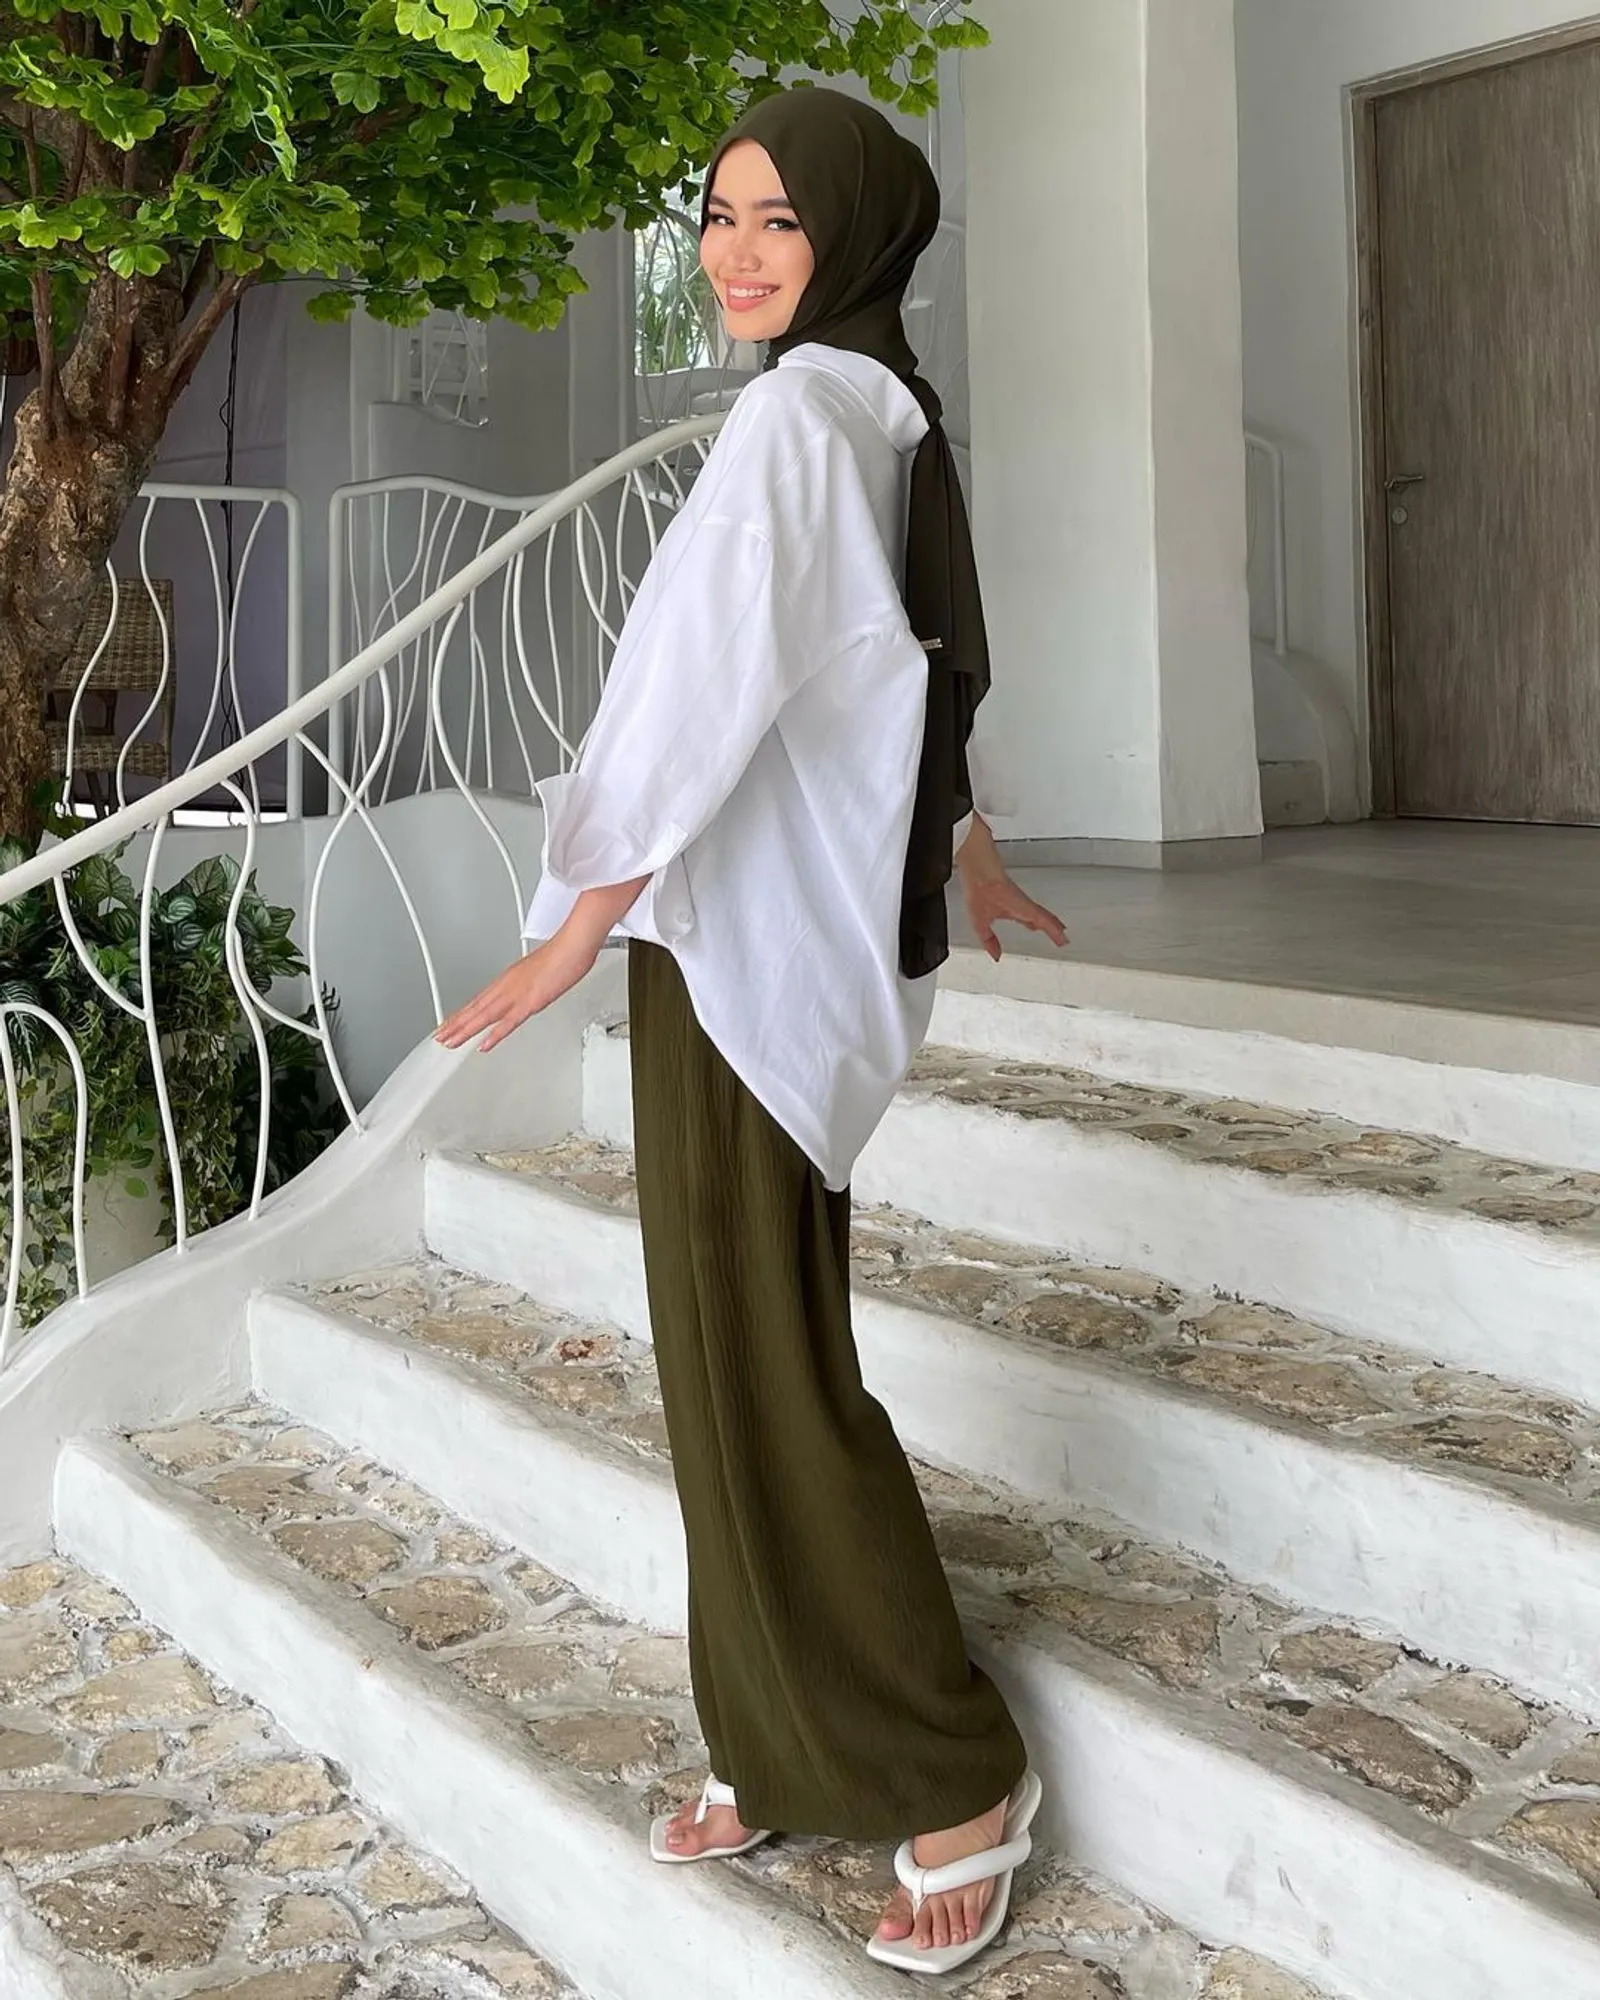 Referensi Gaya Baru Pakai Celana Kulot untuk Hijabers